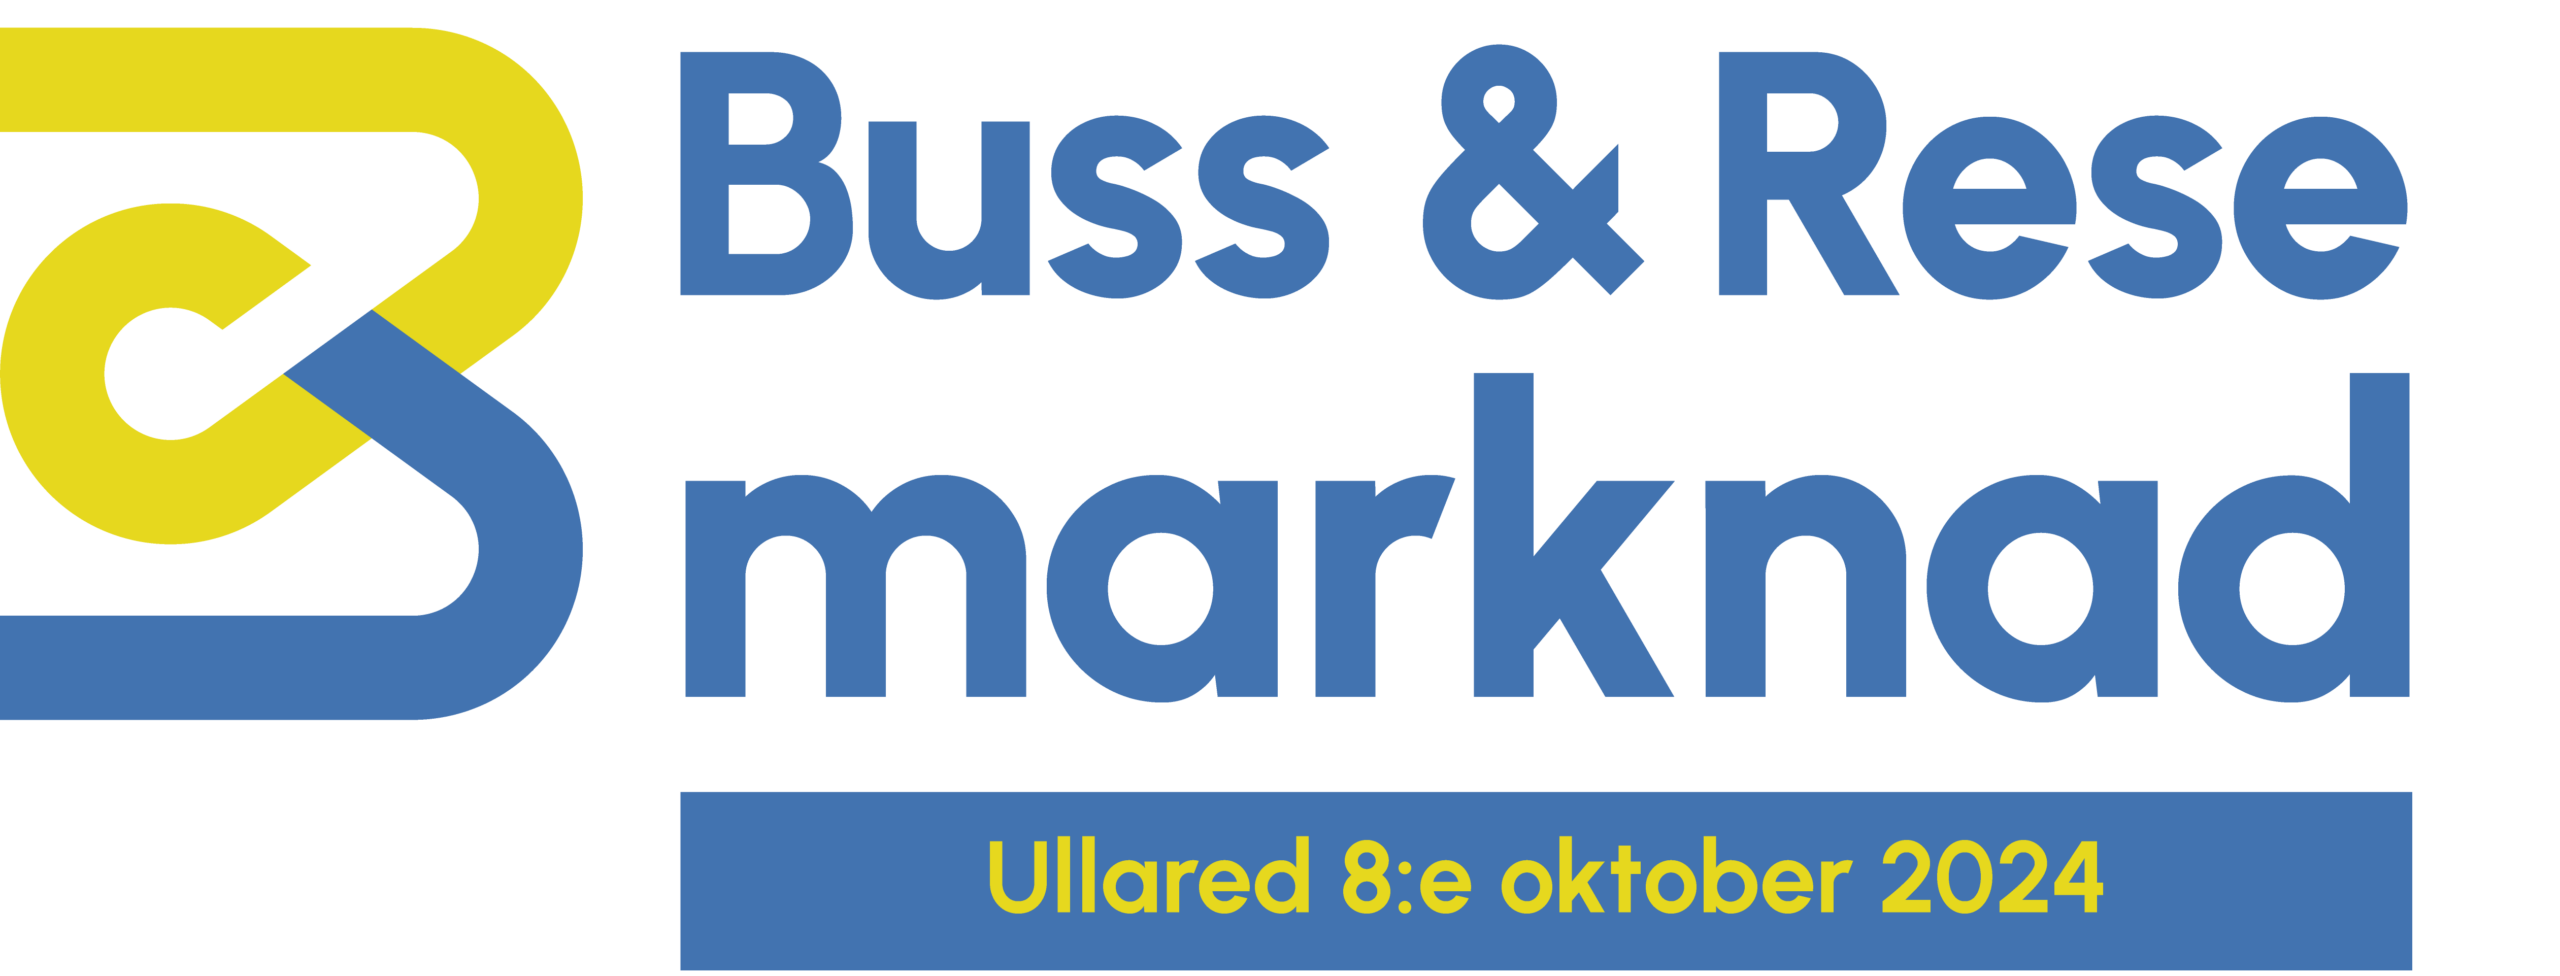 Logo för Buss & Resemarknad 2024